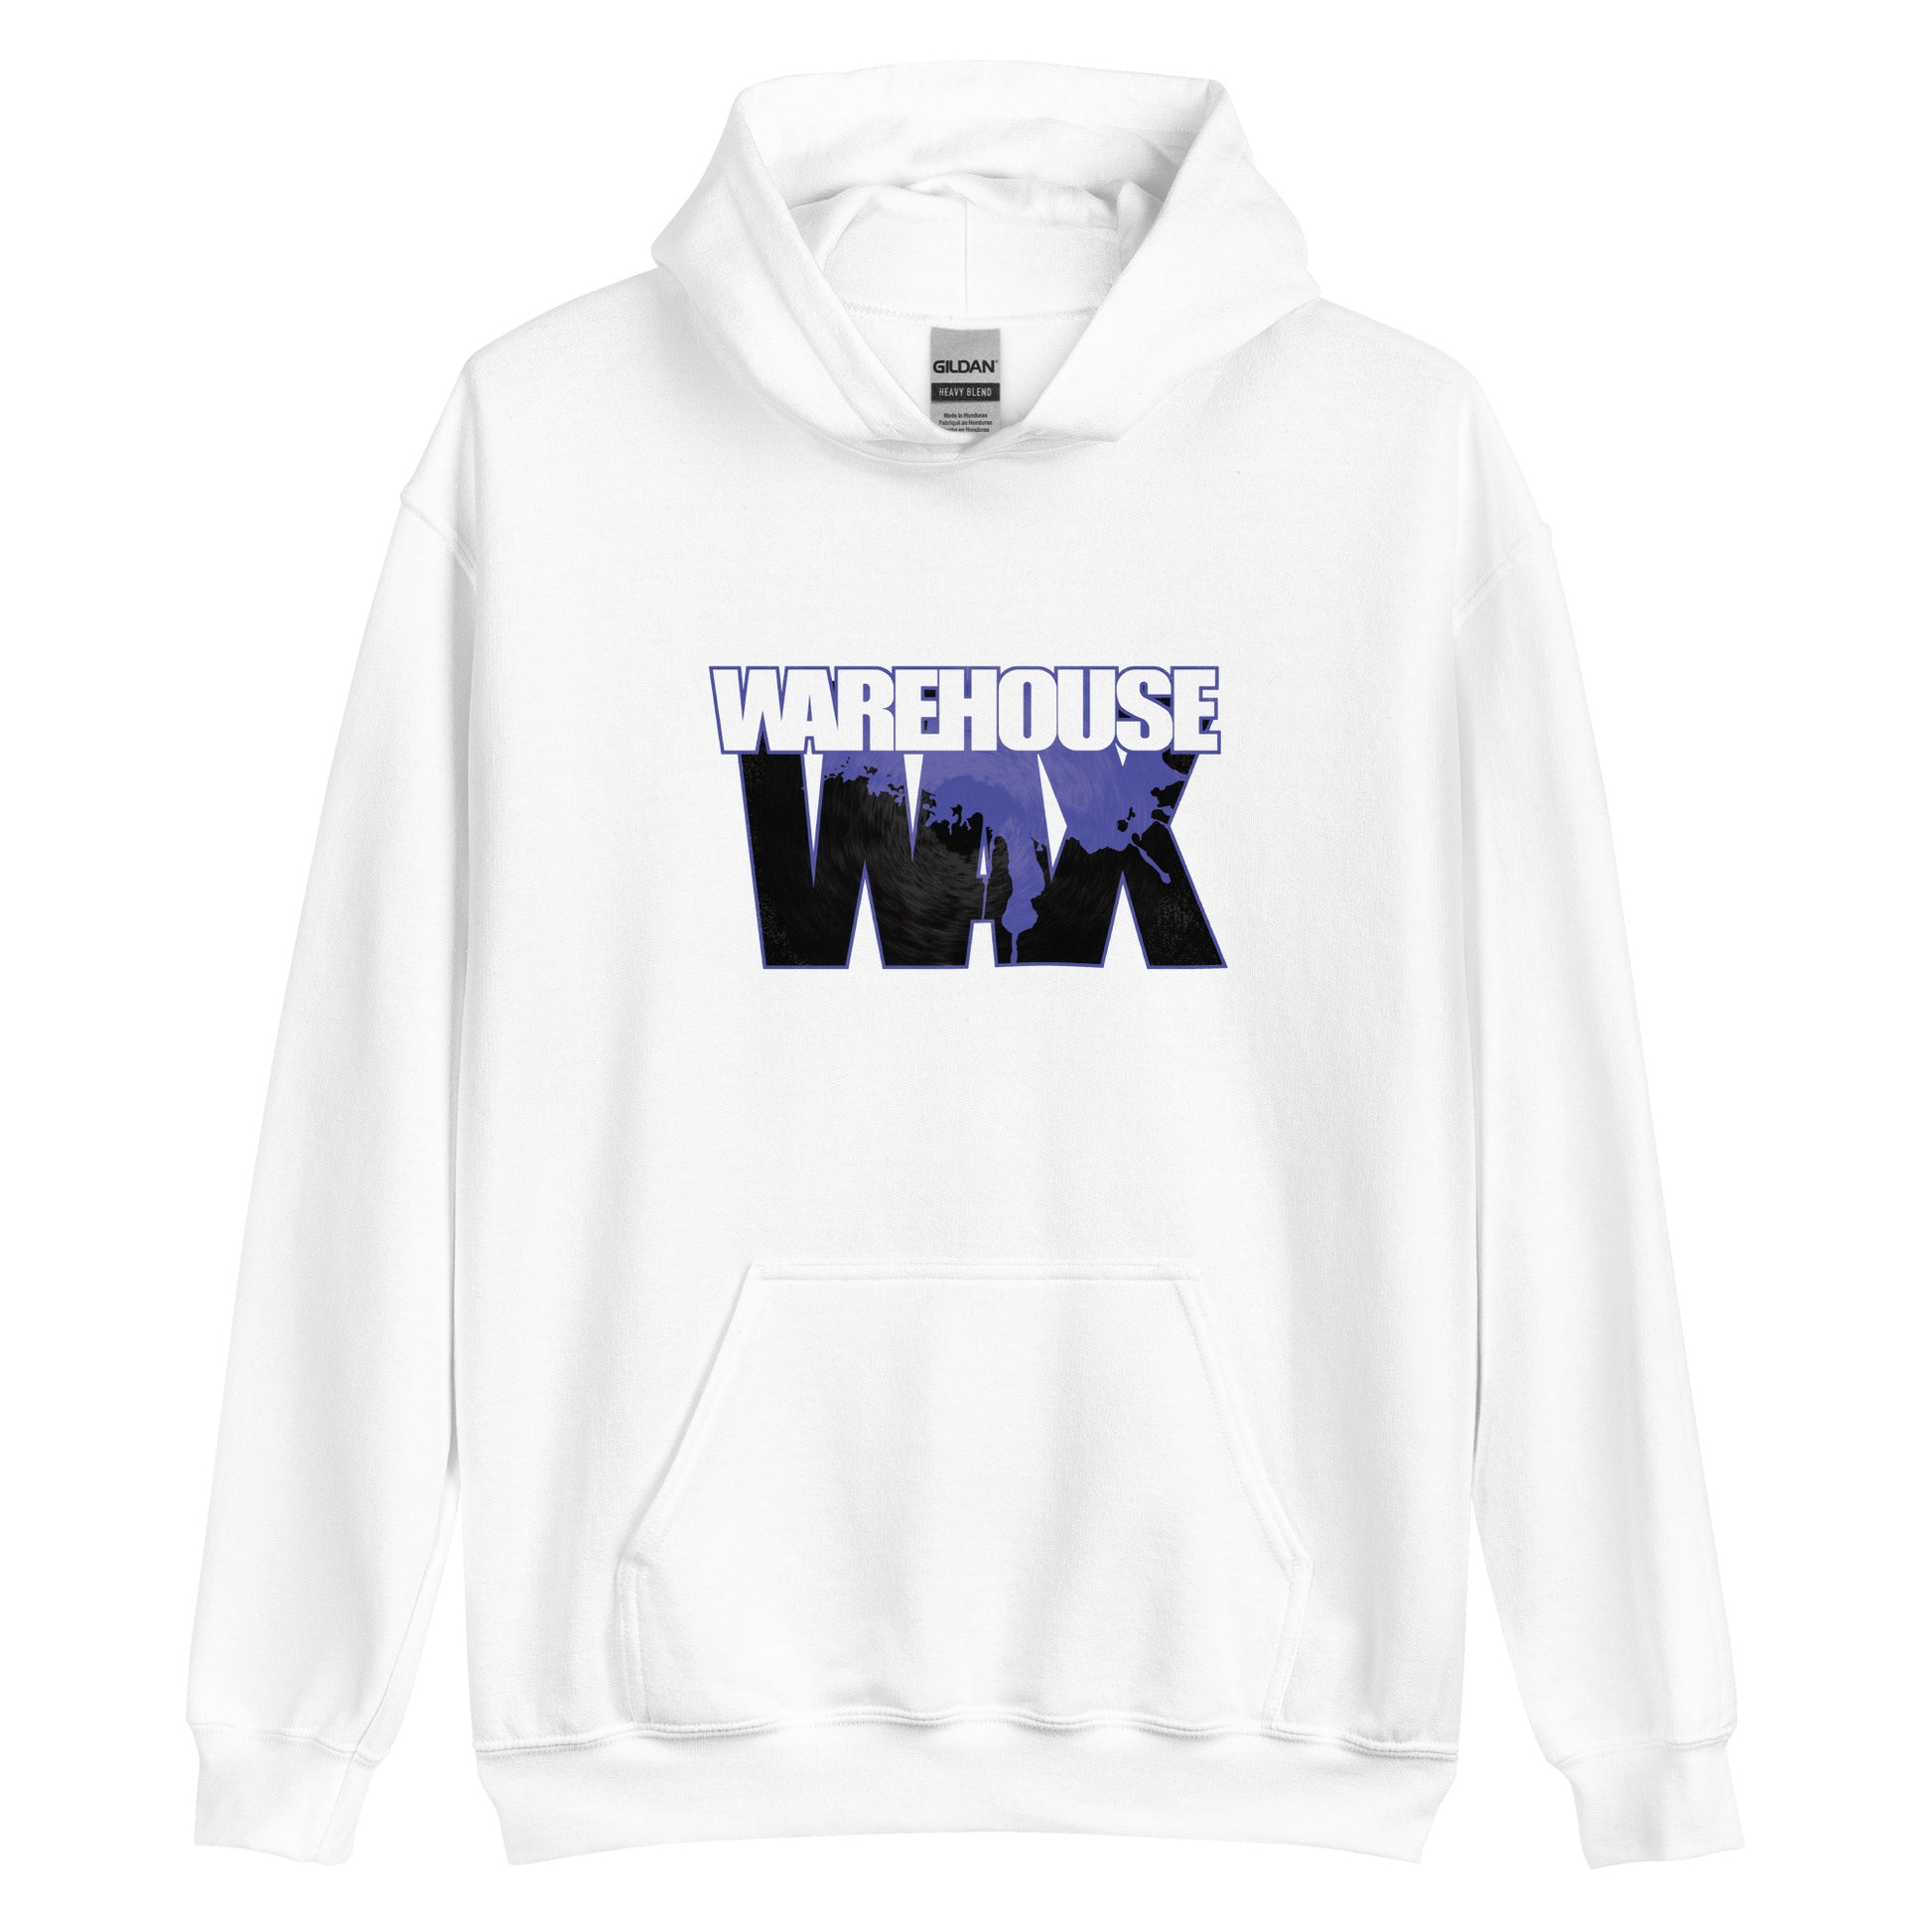 Warehouse Wax Unisex Hoodie - Vinyl Junkie UK